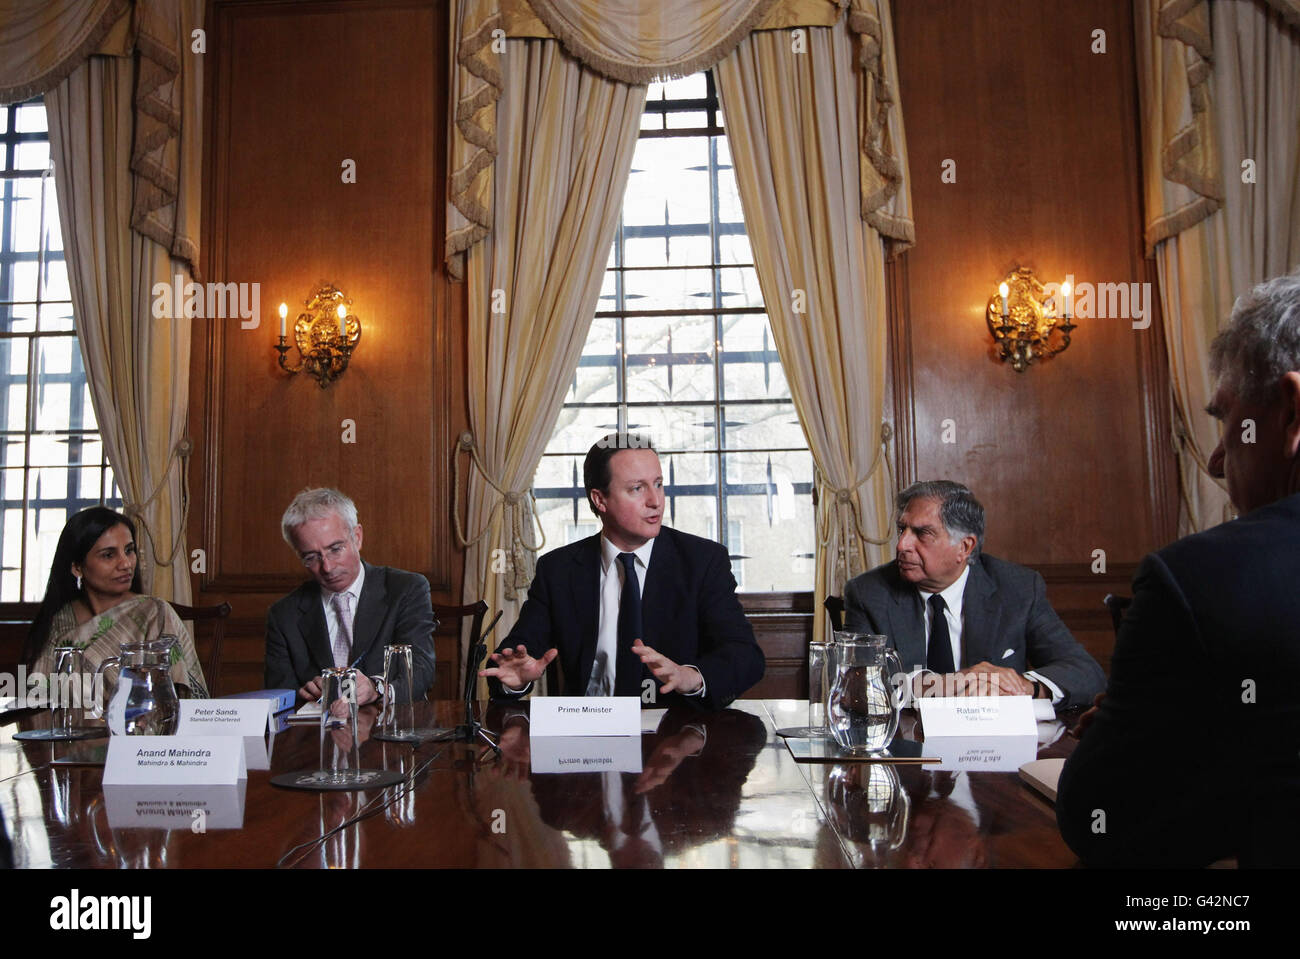 Le Premier ministre David Cameron (au centre) préside une réunion du « UK-India CEO Forum », au 10 Downing Street, Londres.La réunion d'affaires a été présidée conjointement par le PDG de Standard Chartered, Peter Sands (2e à gauche), et le PDG de TATA, Ratan Tata (droite), et est le premier des forums de PDG UK-India à avoir lieu.APPUYEZ SUR ASSOCIATION photo.Date de la photo : jeudi 3 février 2011.Le crédit photo devrait se lire comme suit : Dan Kitwood/PA Wire Banque D'Images